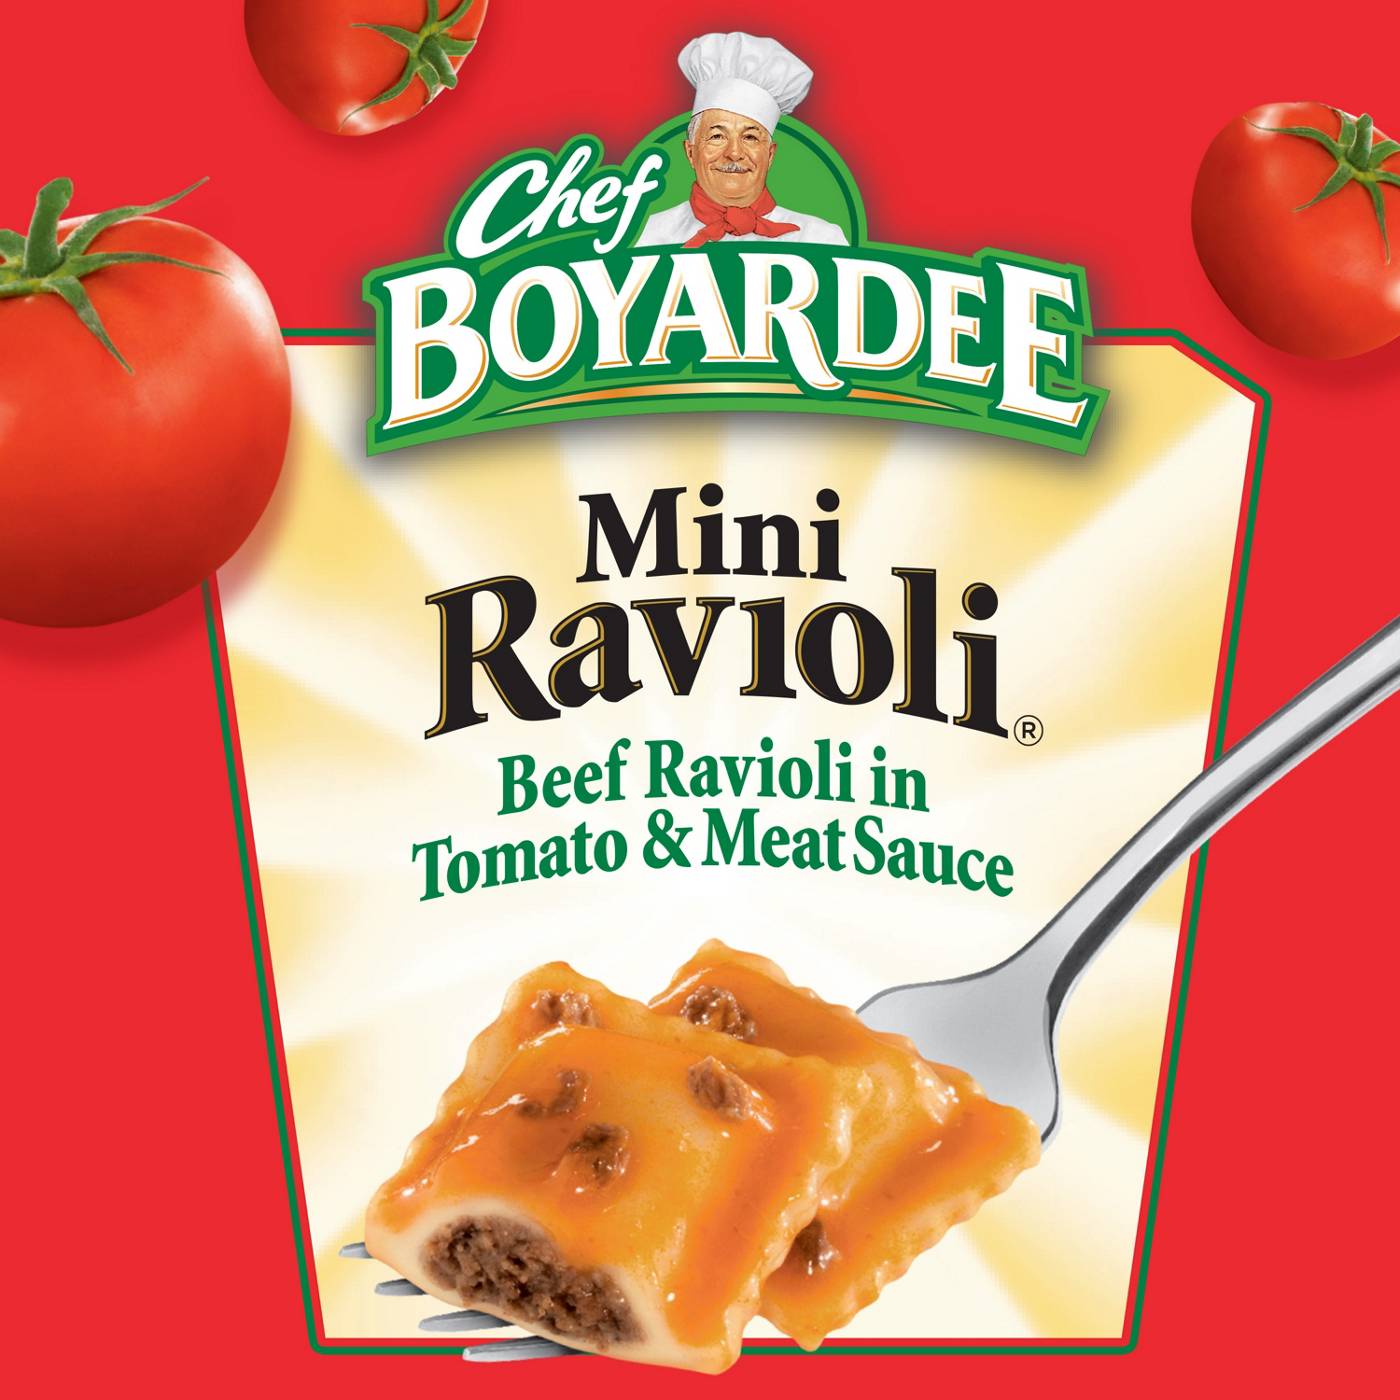 Chef Boyardee Mini Ravioli; image 6 of 7